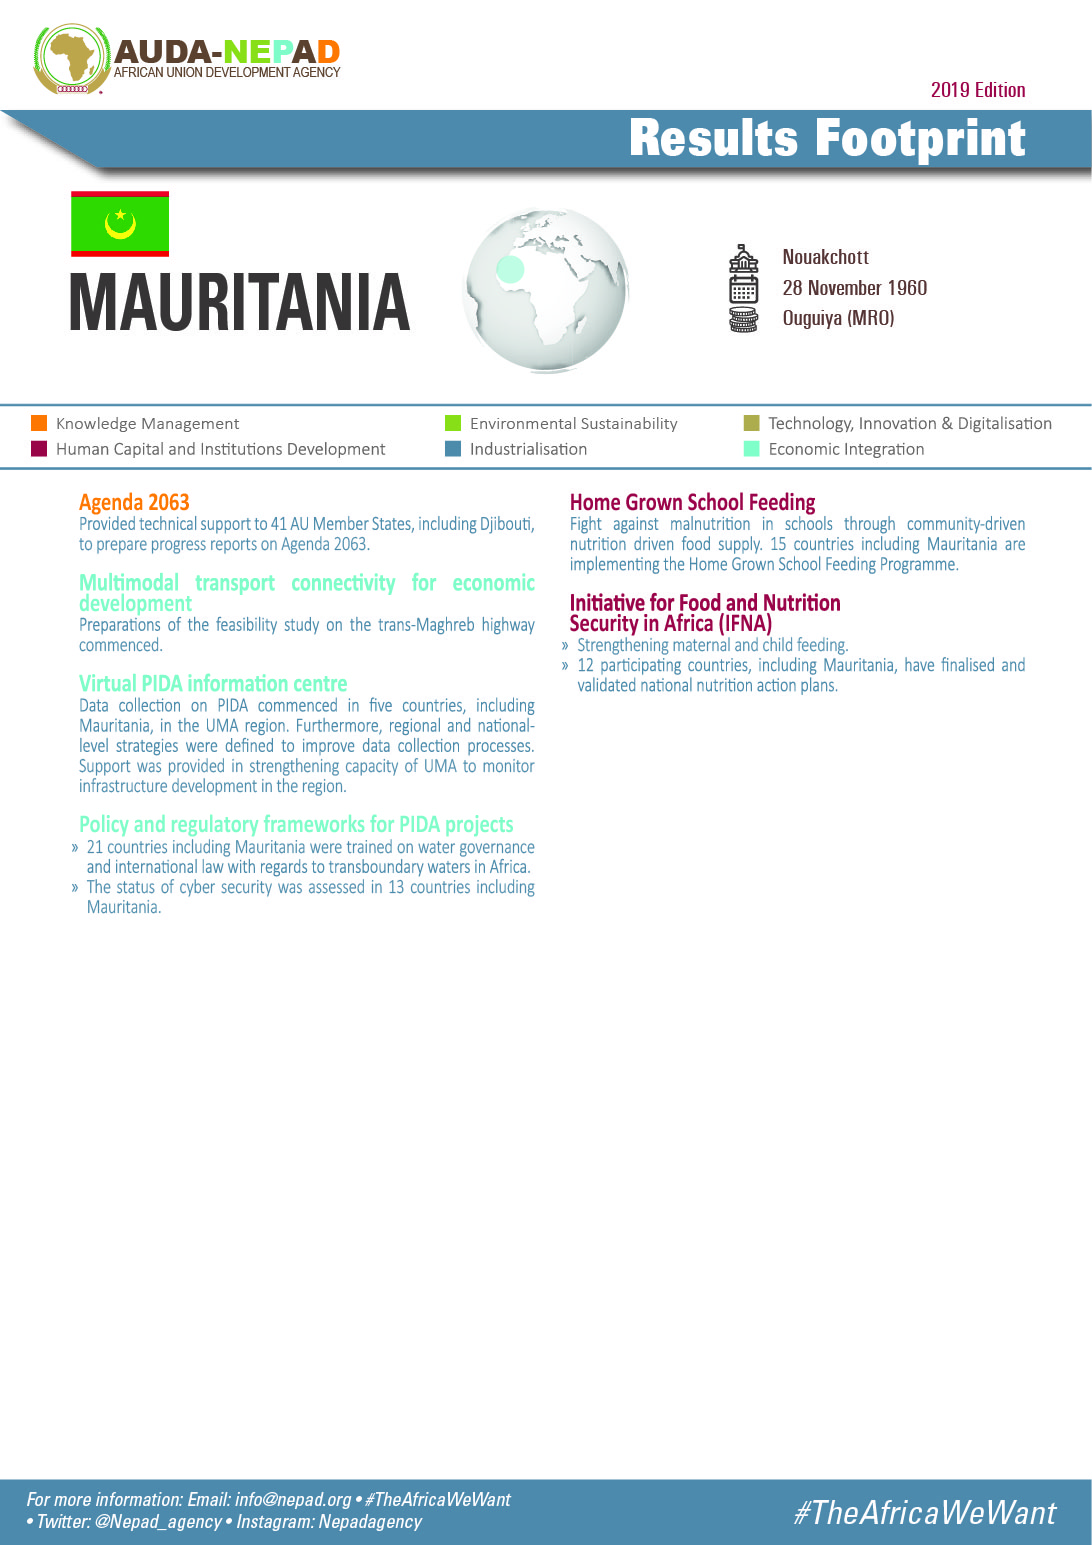 2019 AUDA-NEPAD Footprint: Country Profiles: Mauritania